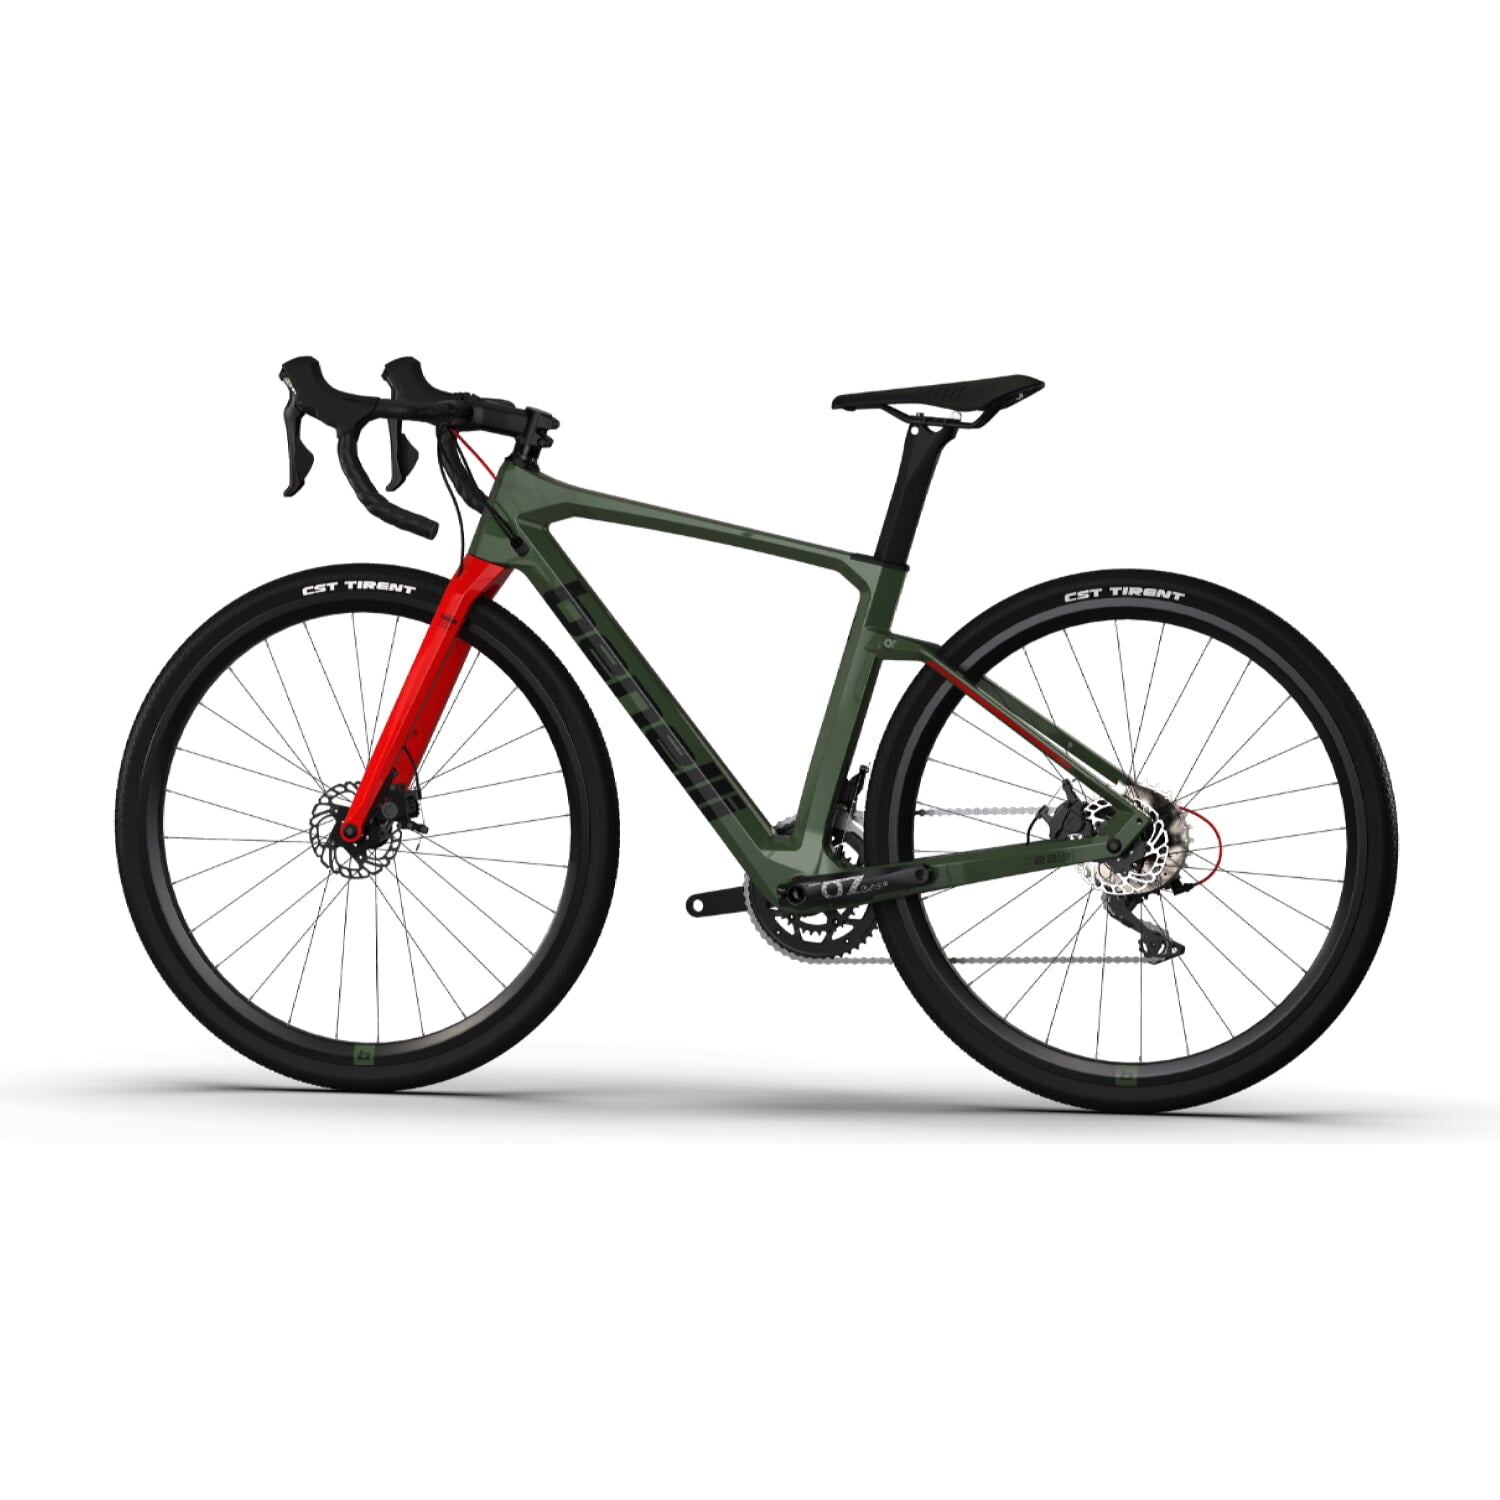 Influencia Calma níquel Bicicleta Gravel Benelli Carb. (G22 1.0 Adv Carb) Color Verde Militar/